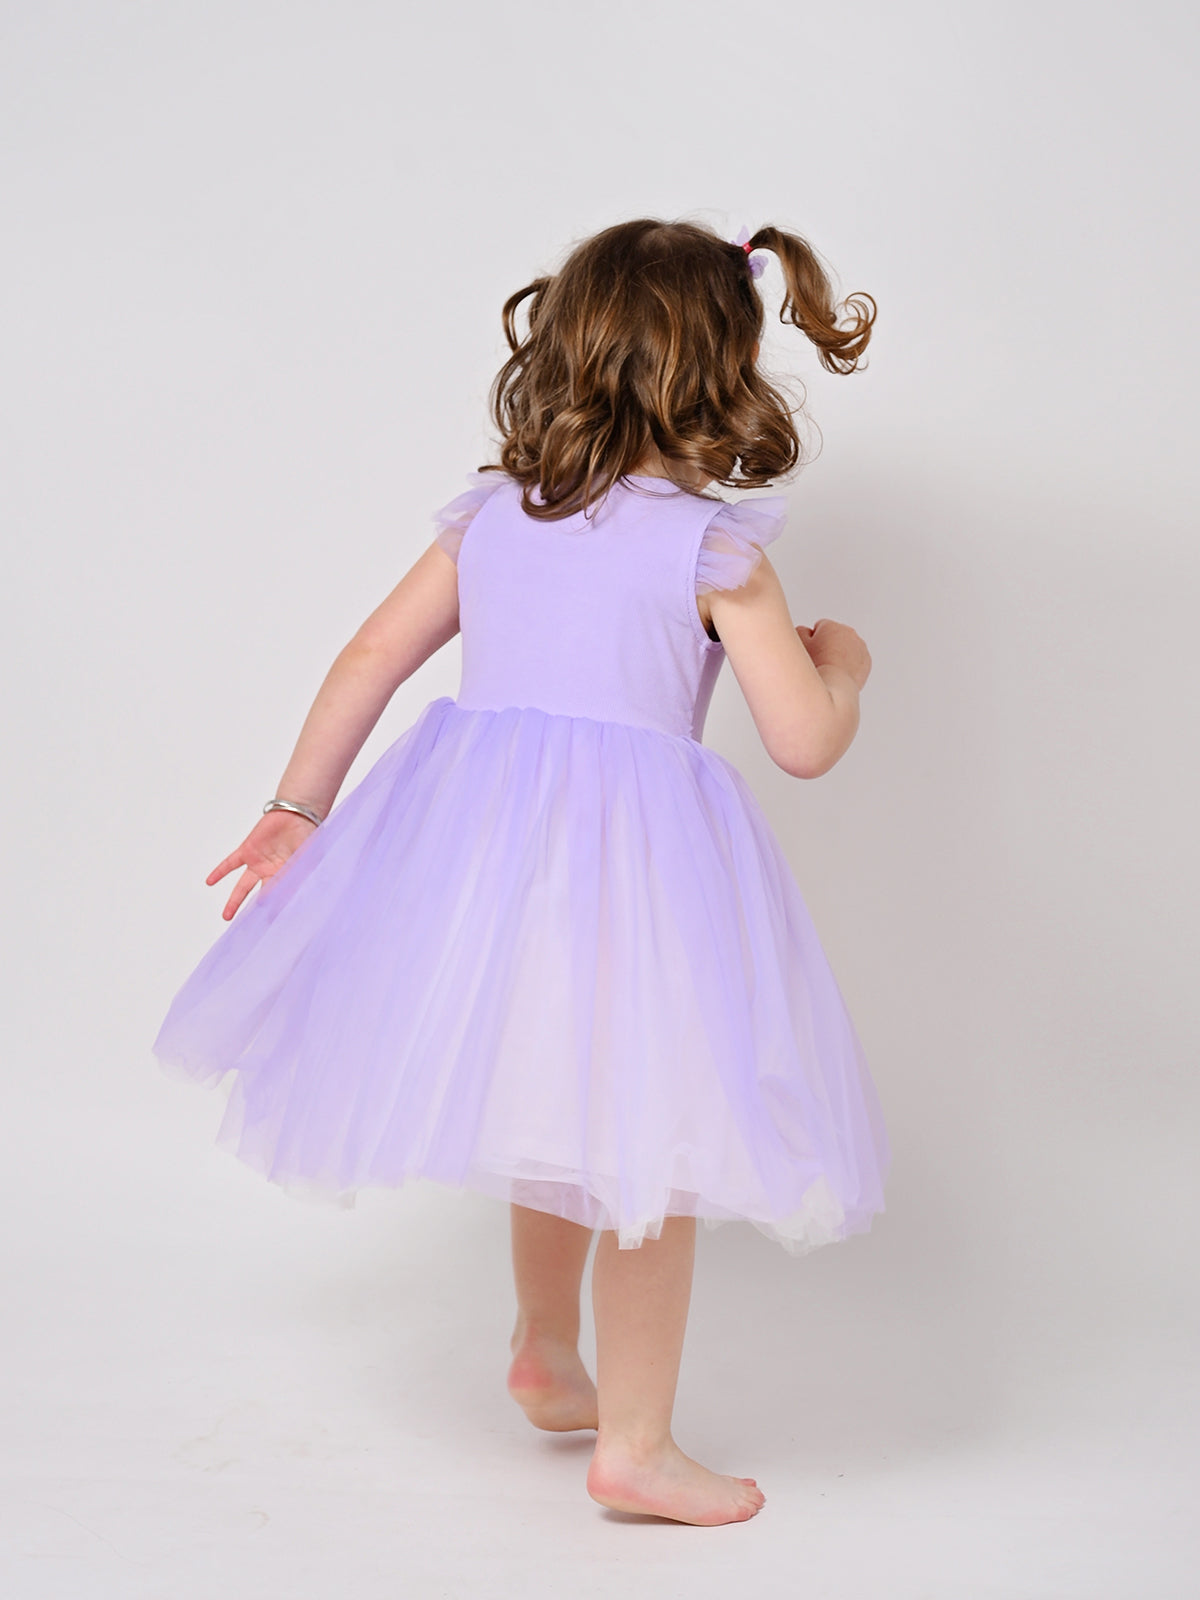 שמלת טול פרפר סגולה / ילדות ותינוקות- Almonet|עלמונת